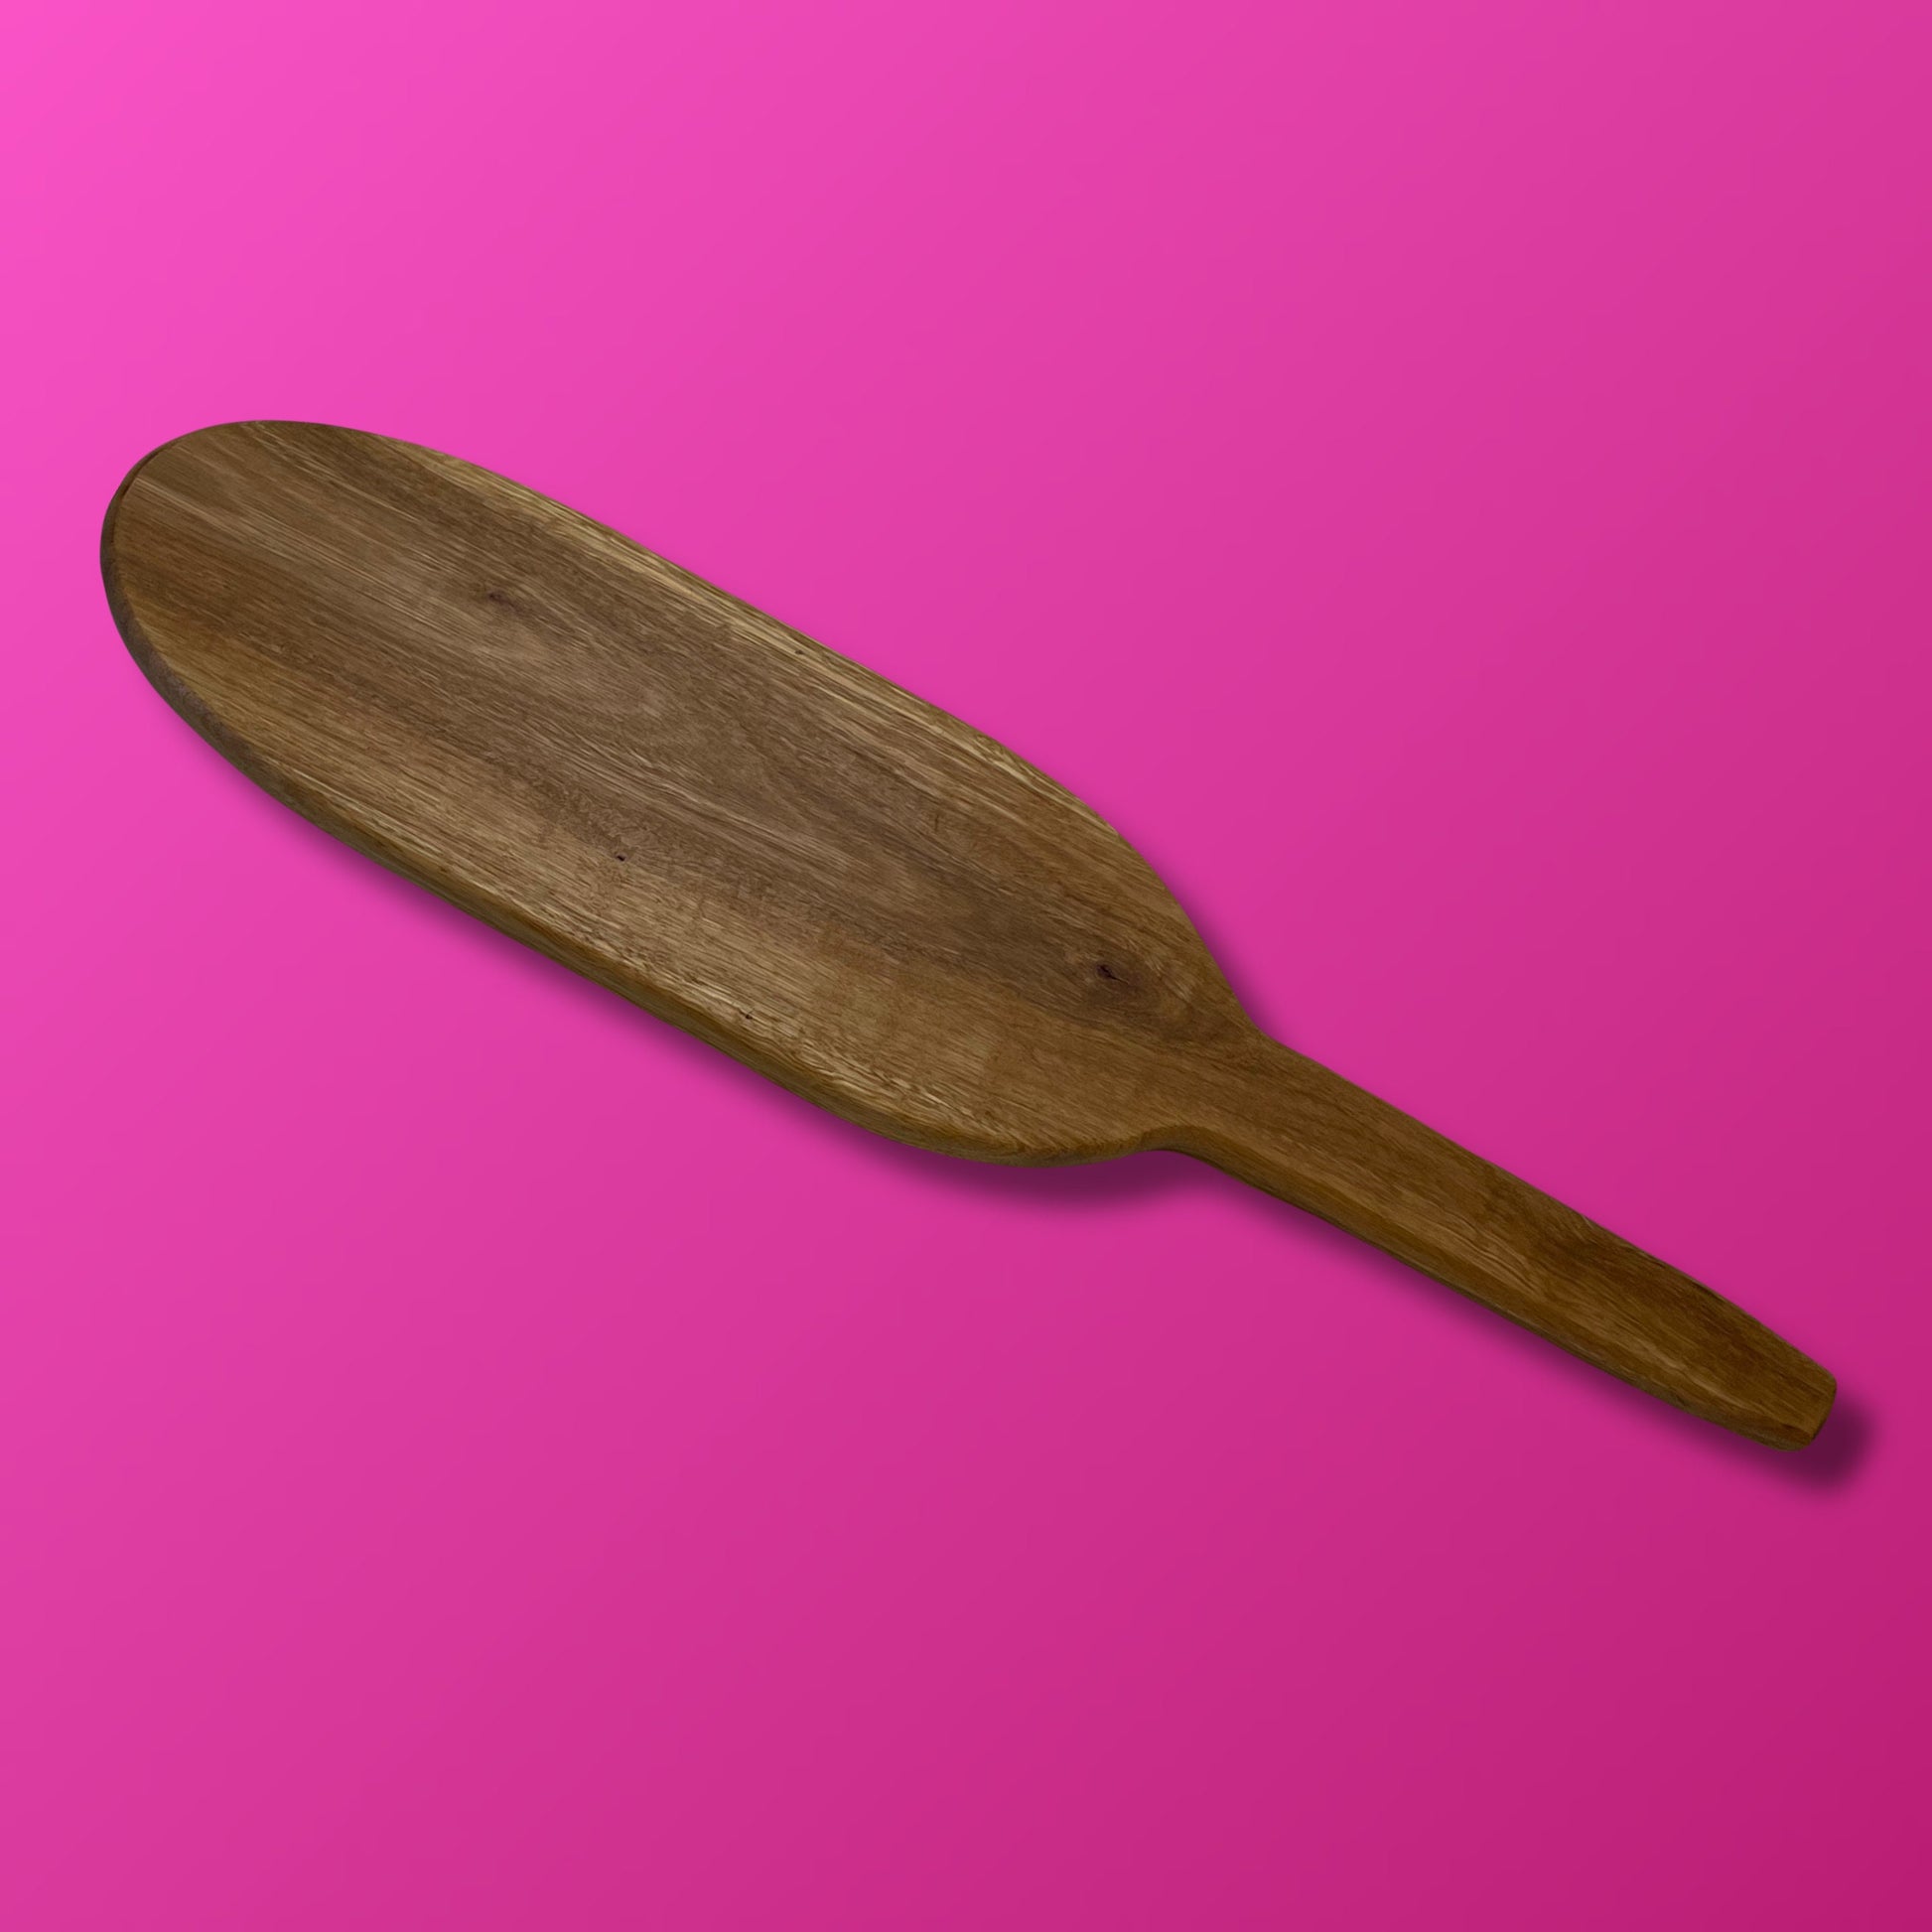 Long Spanking Paddle, Wooden Spanking Paddle, Impact BDSM Paddle